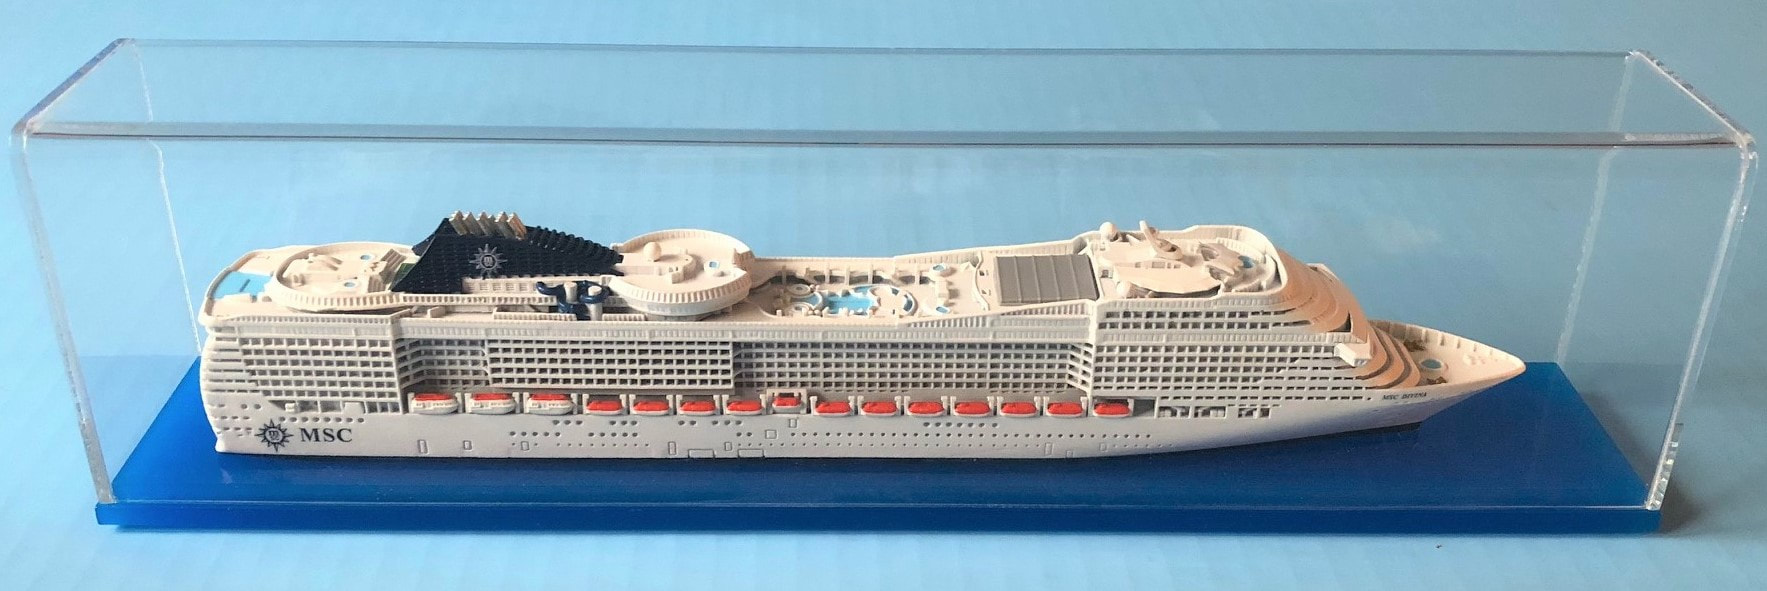 1:1250 MSC FANTASIA Cruise Ship 